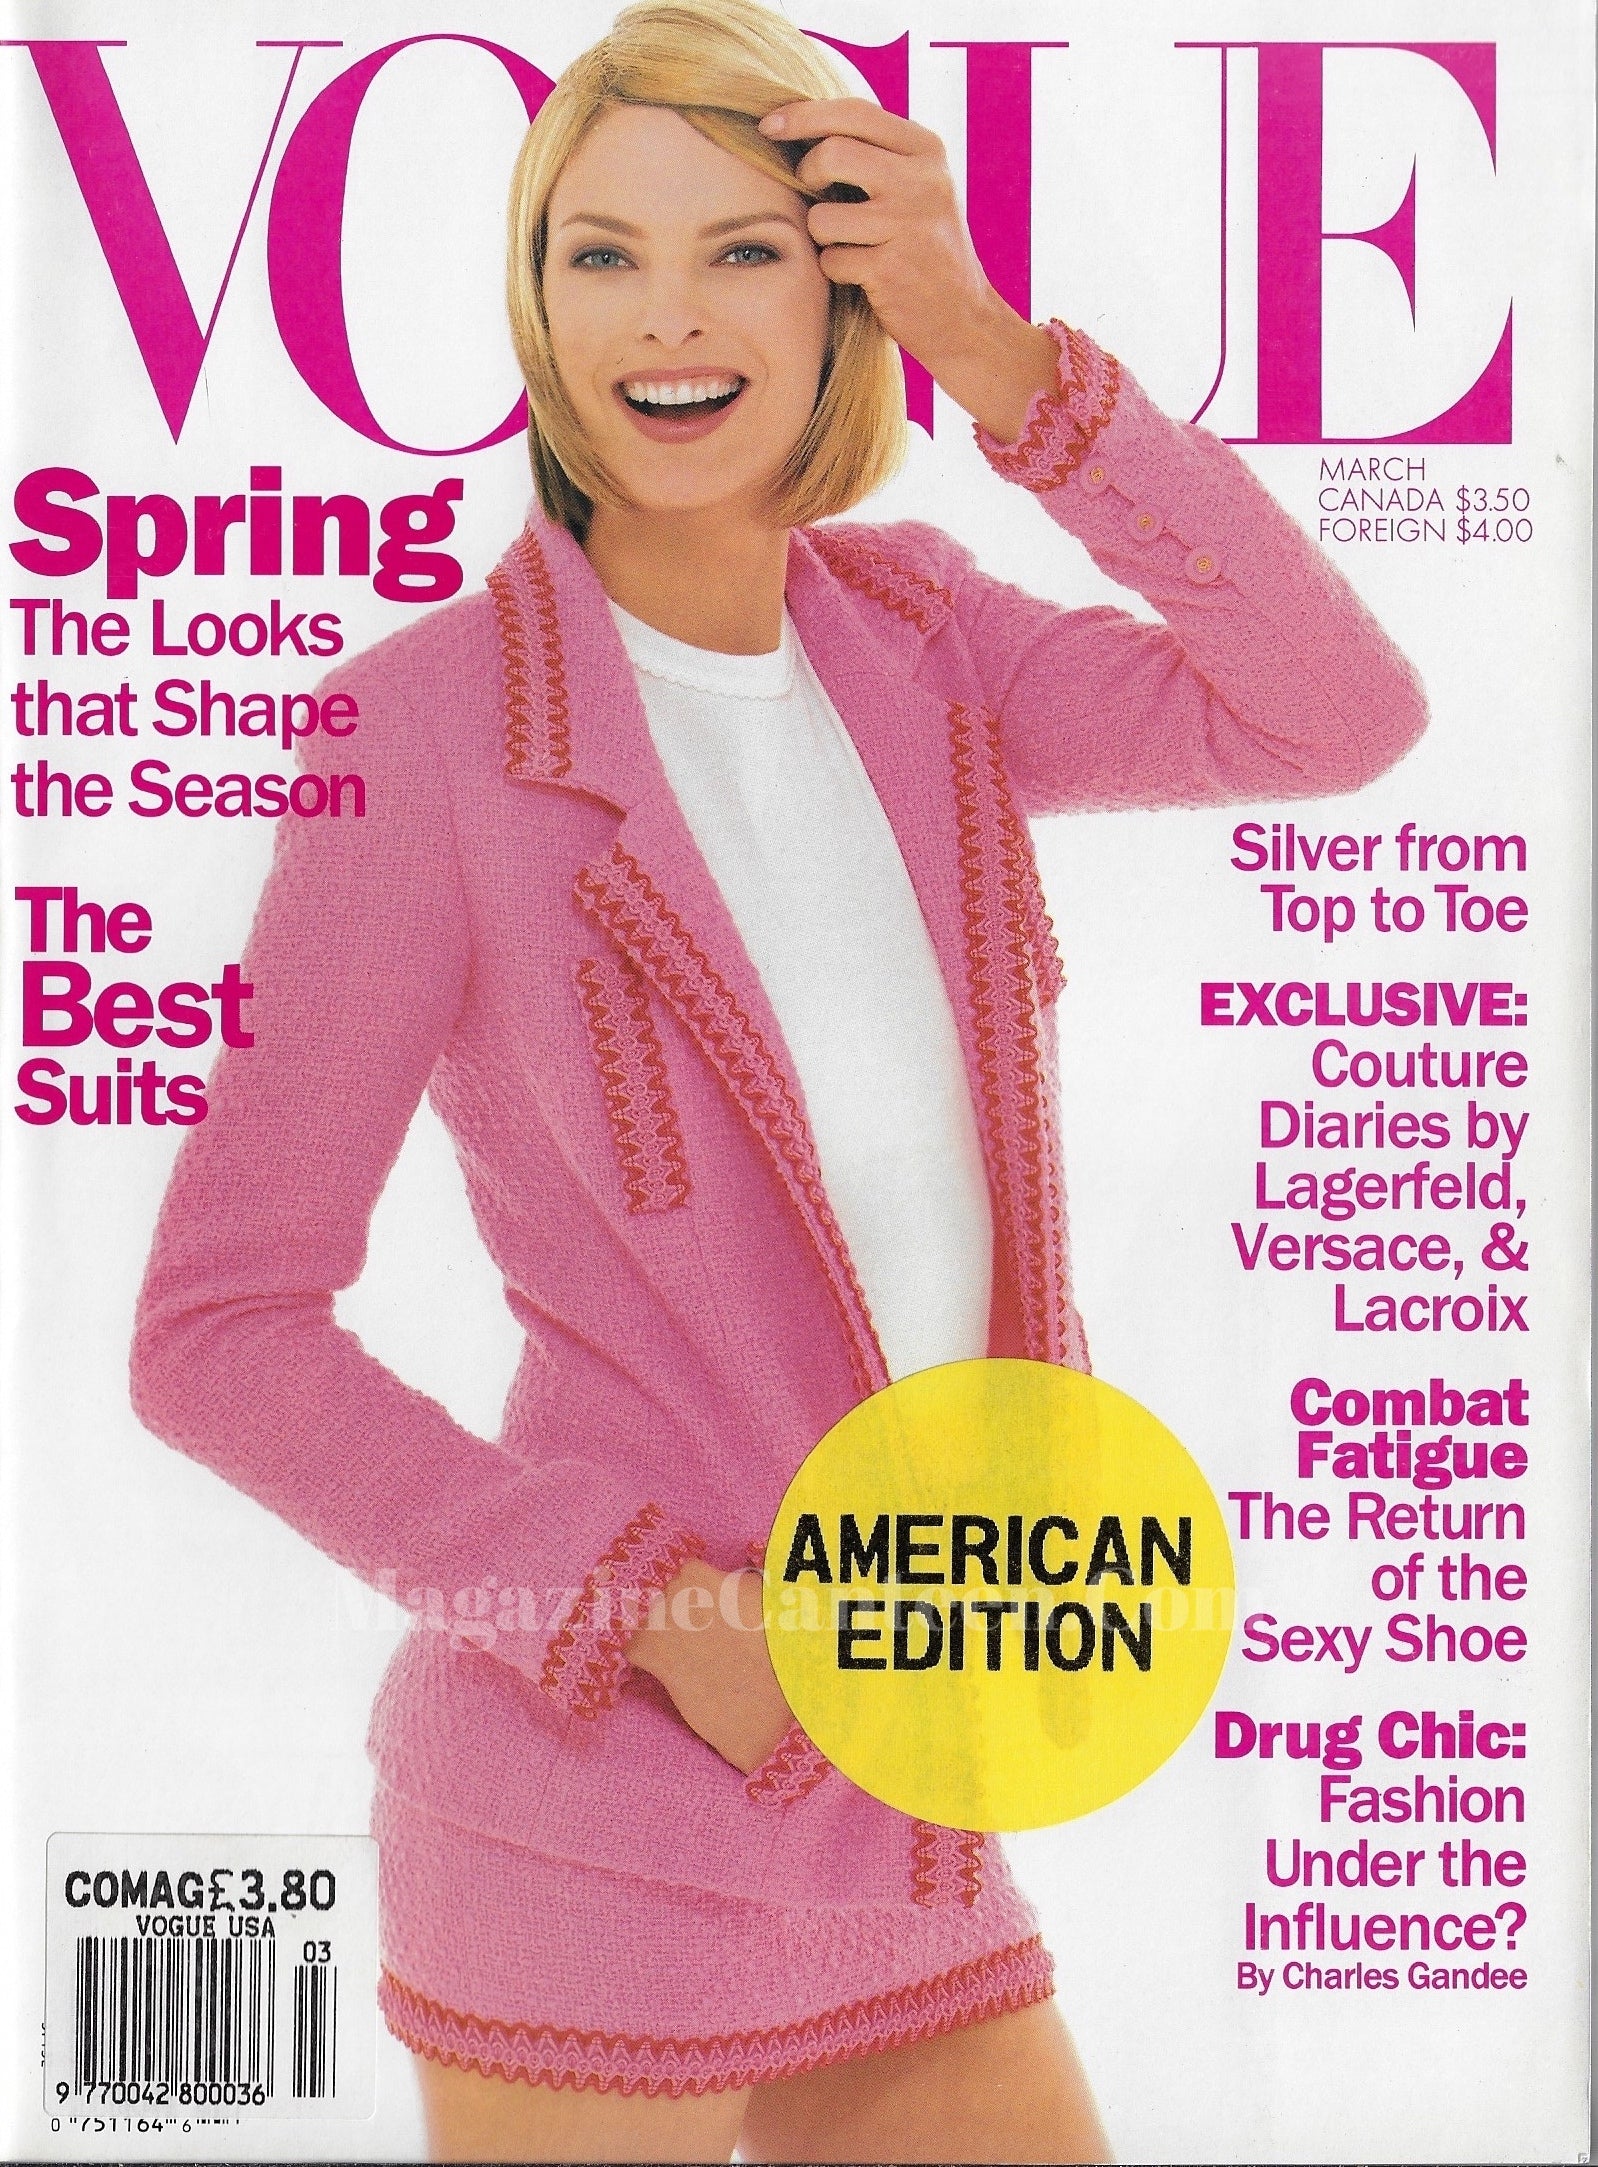 Vogue USA Magazine March 1994 - Linda Evangelista